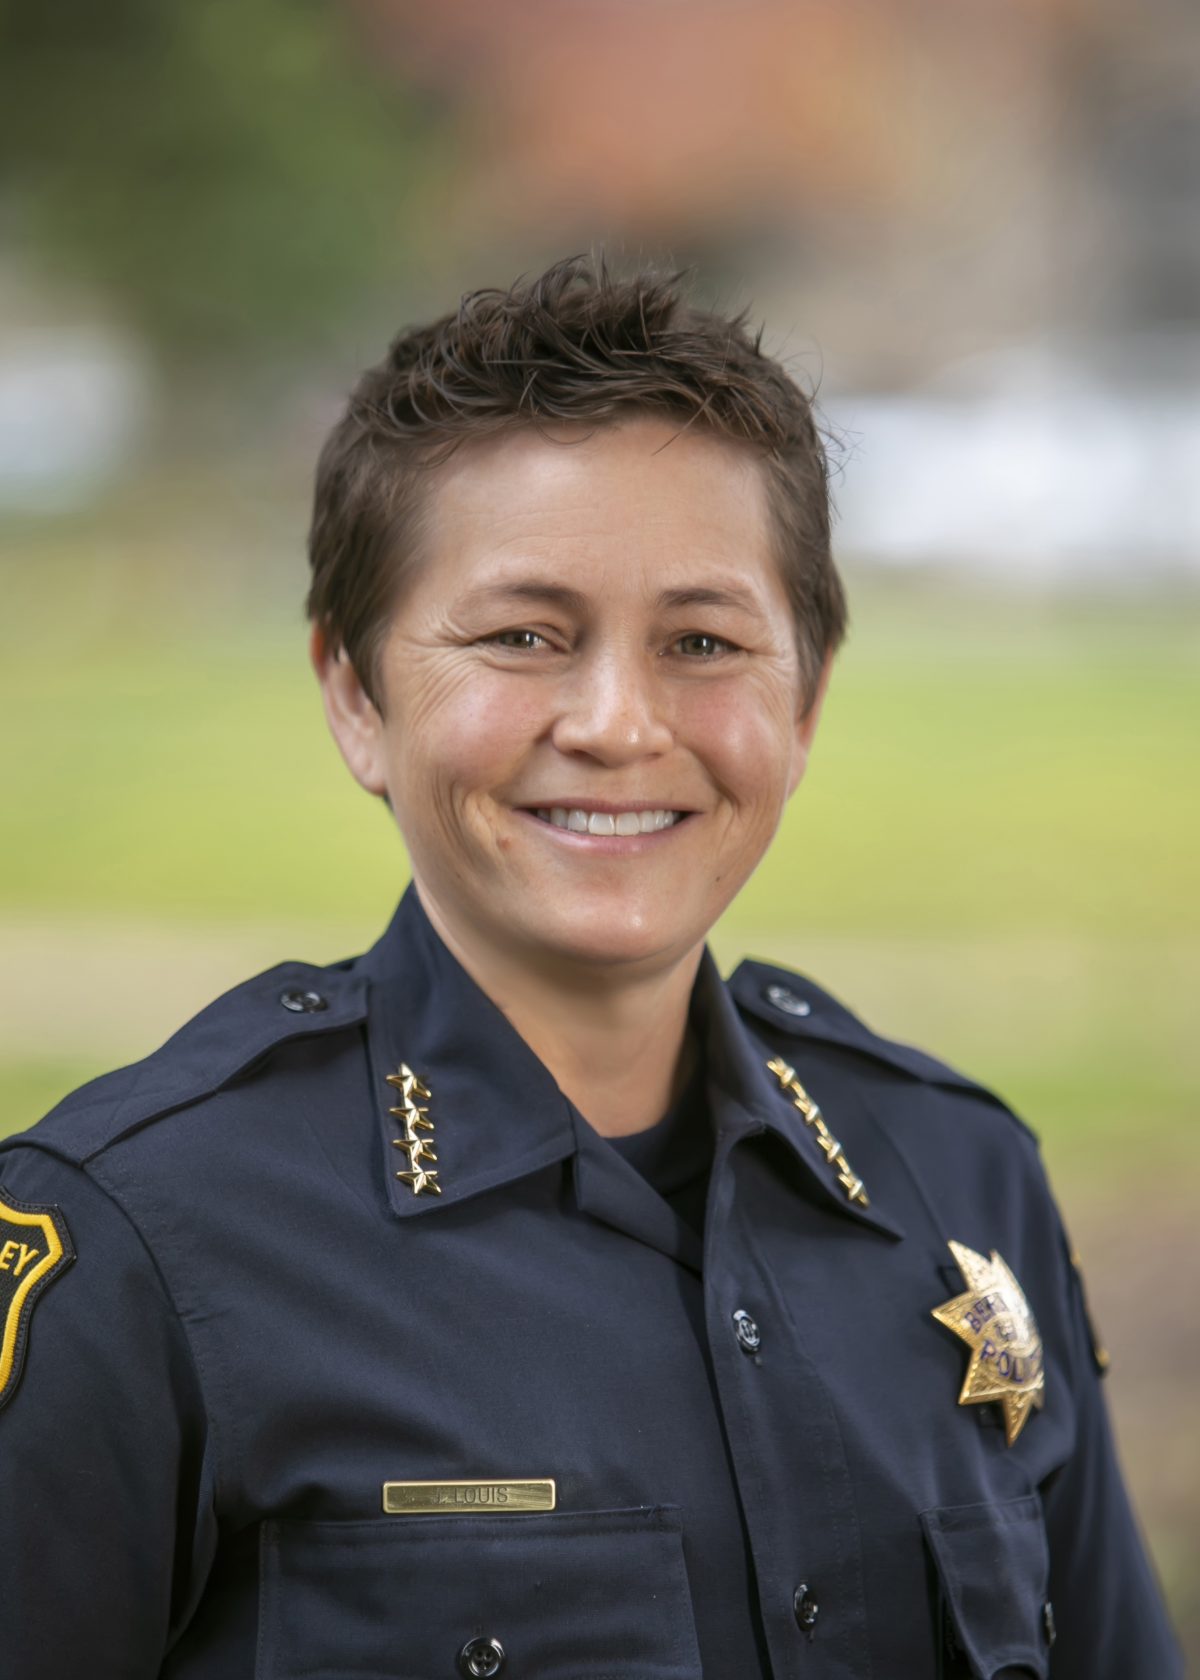 A headshot of Berkeley Police Chief Jen Louis